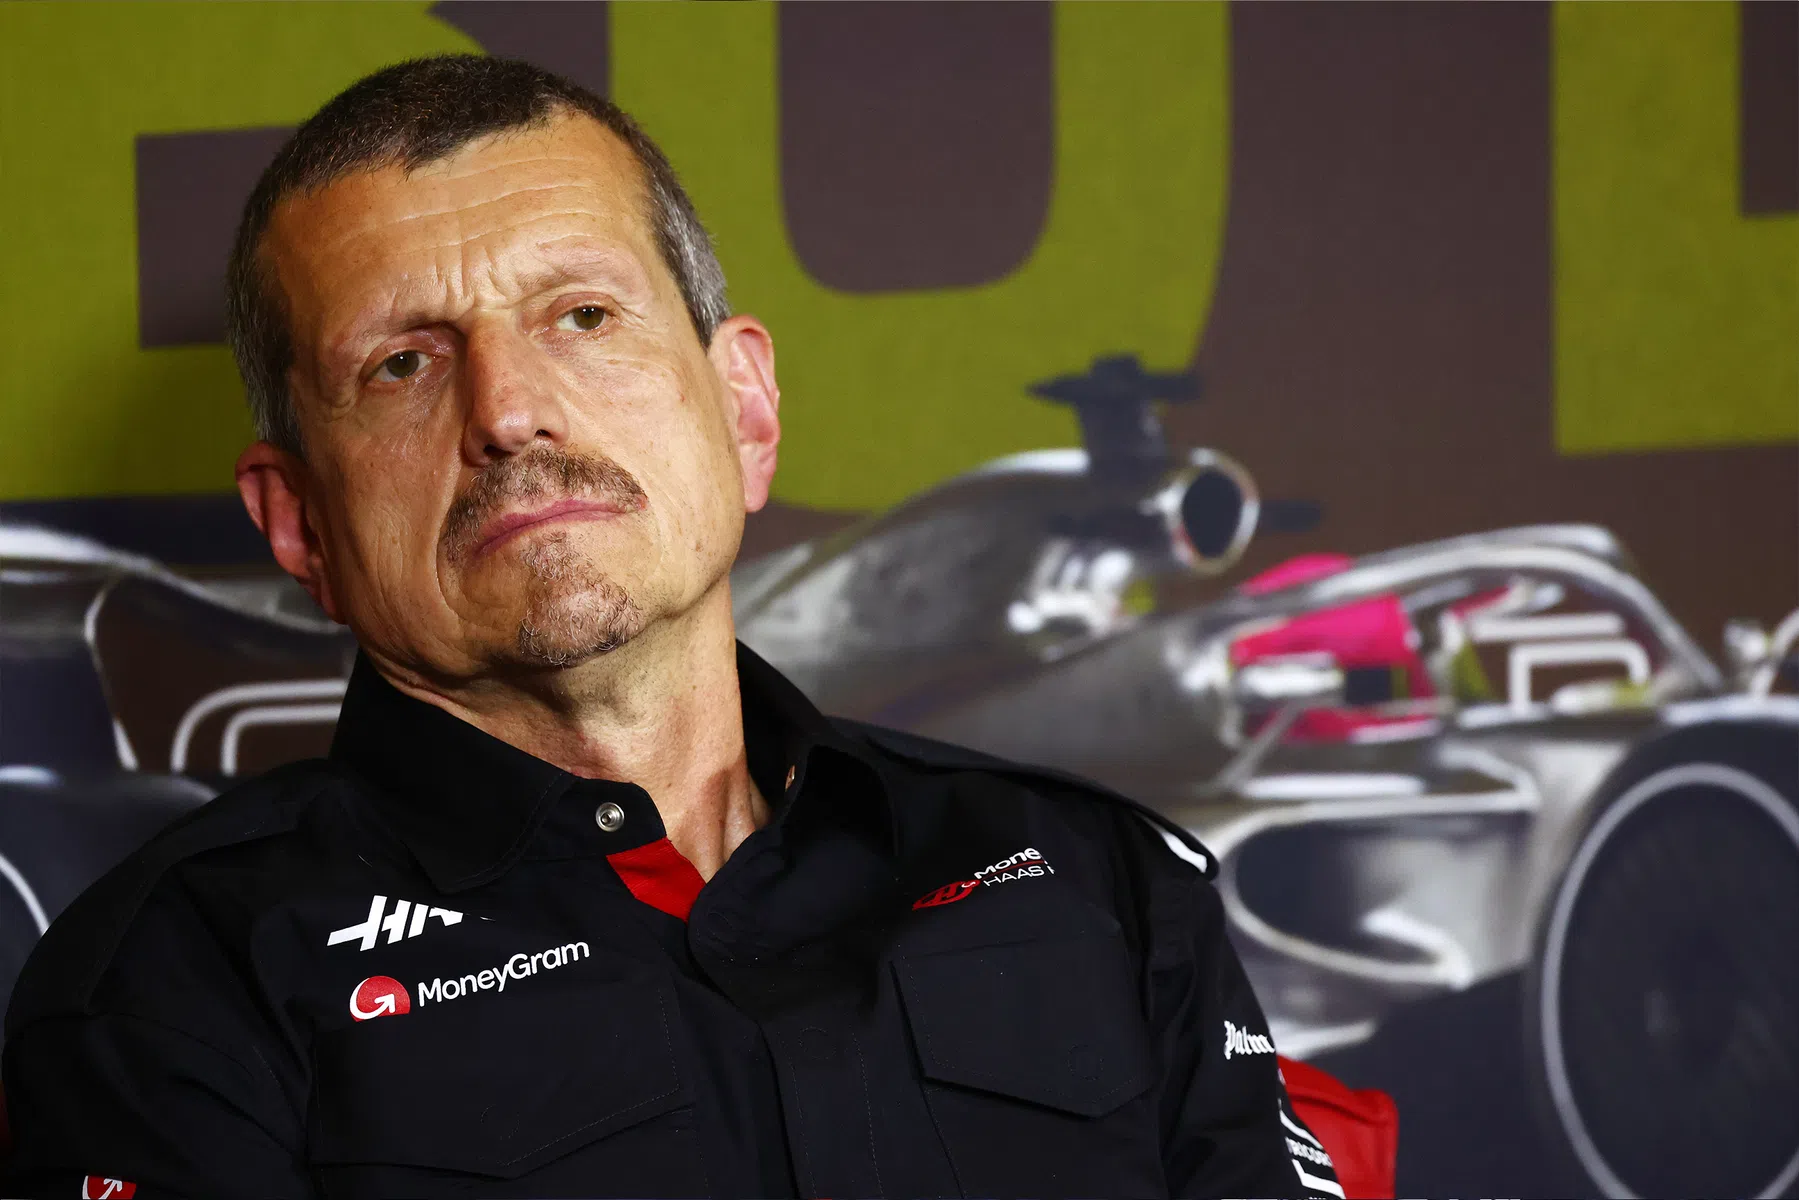 Confirmado: Guenther Steiner ha dejado el equipo Haas F1